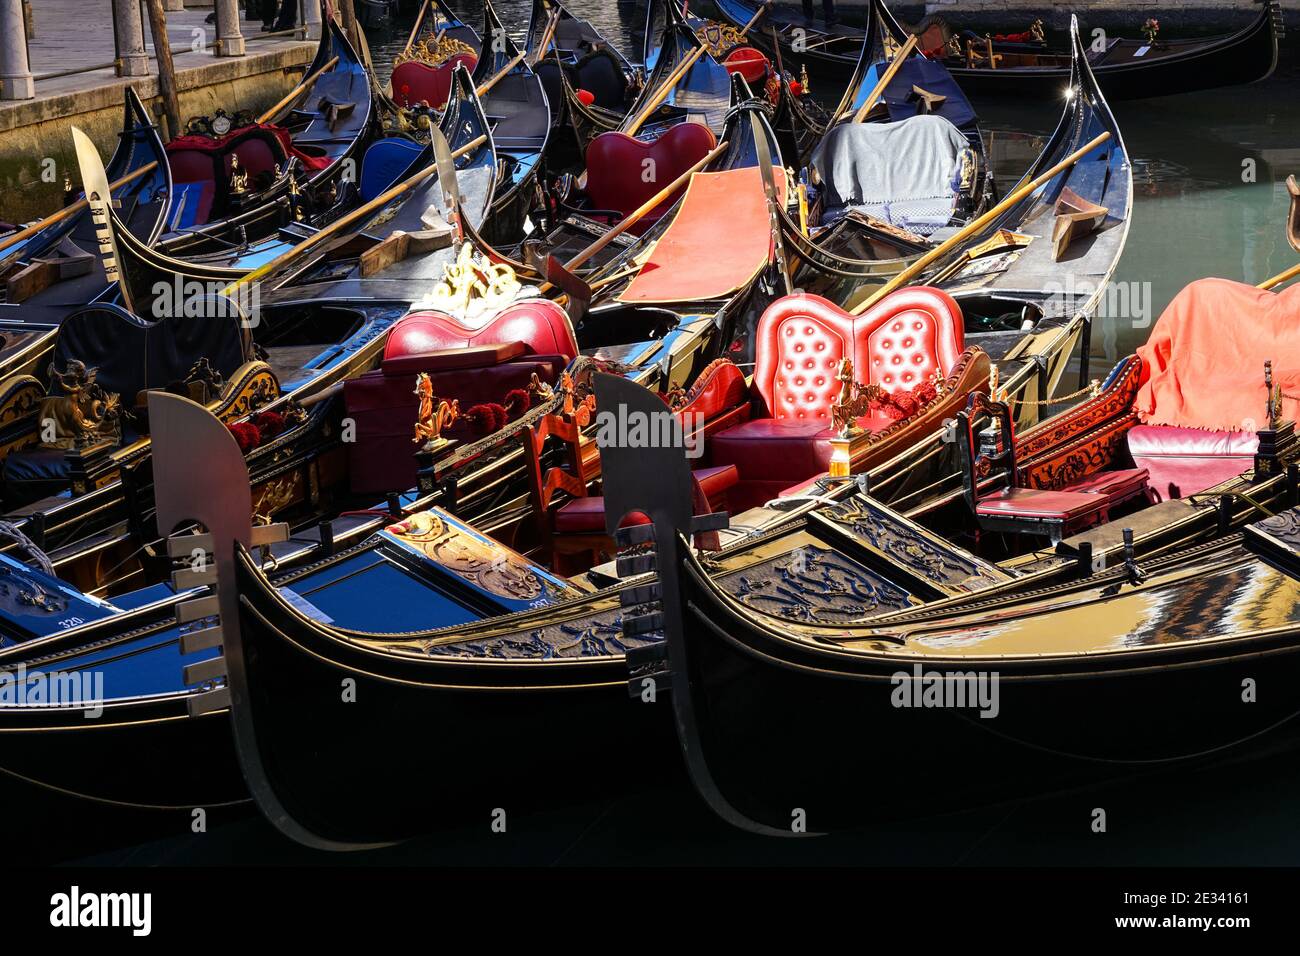 Traditional Venetian gondola, Venetian gondolas on canal in Venice, Italy Stock Photo